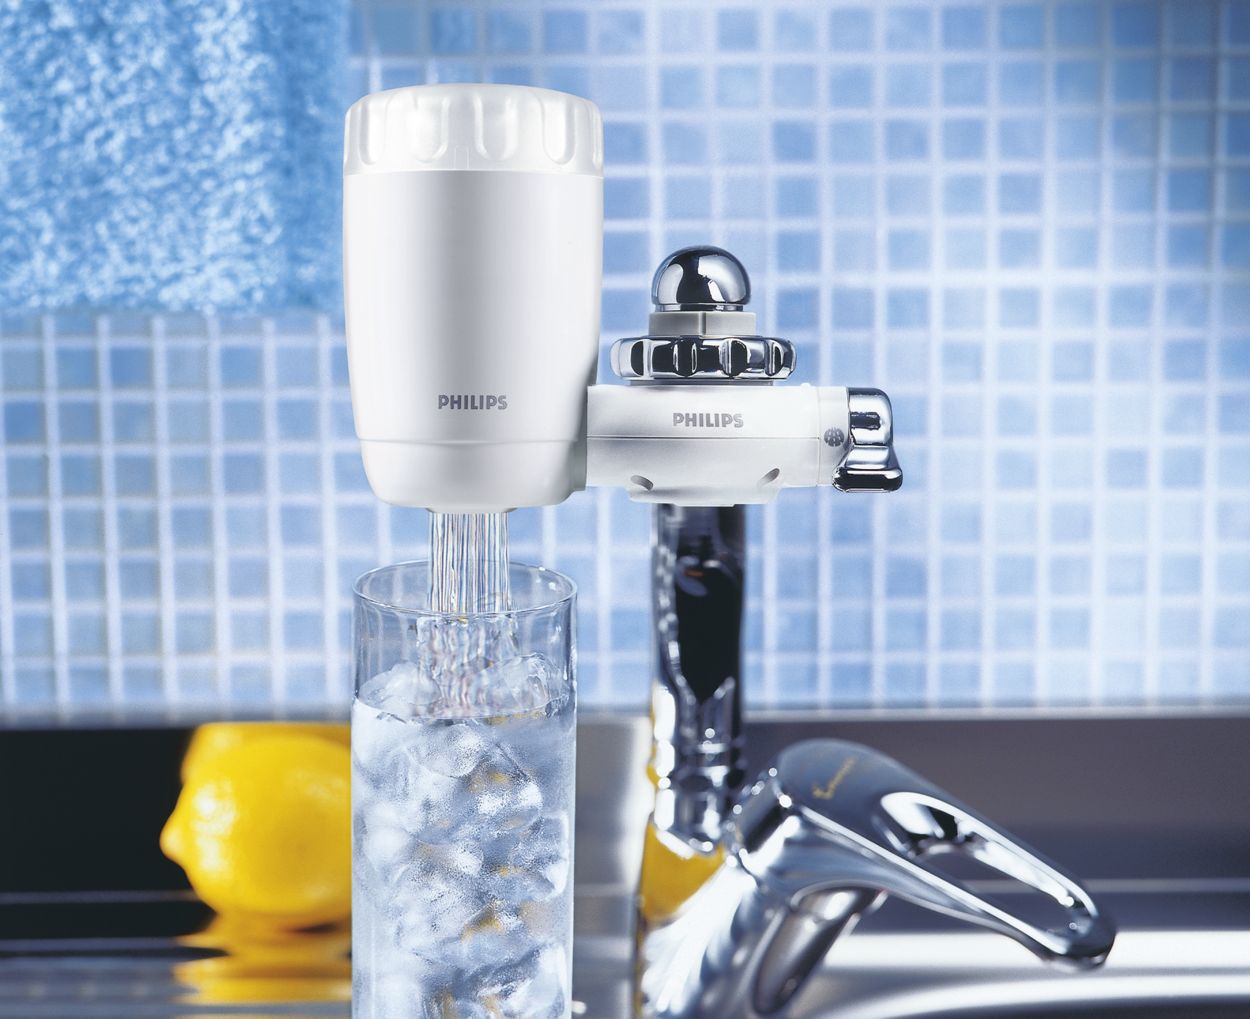 Filtre à eau du robinet Philips WP3961